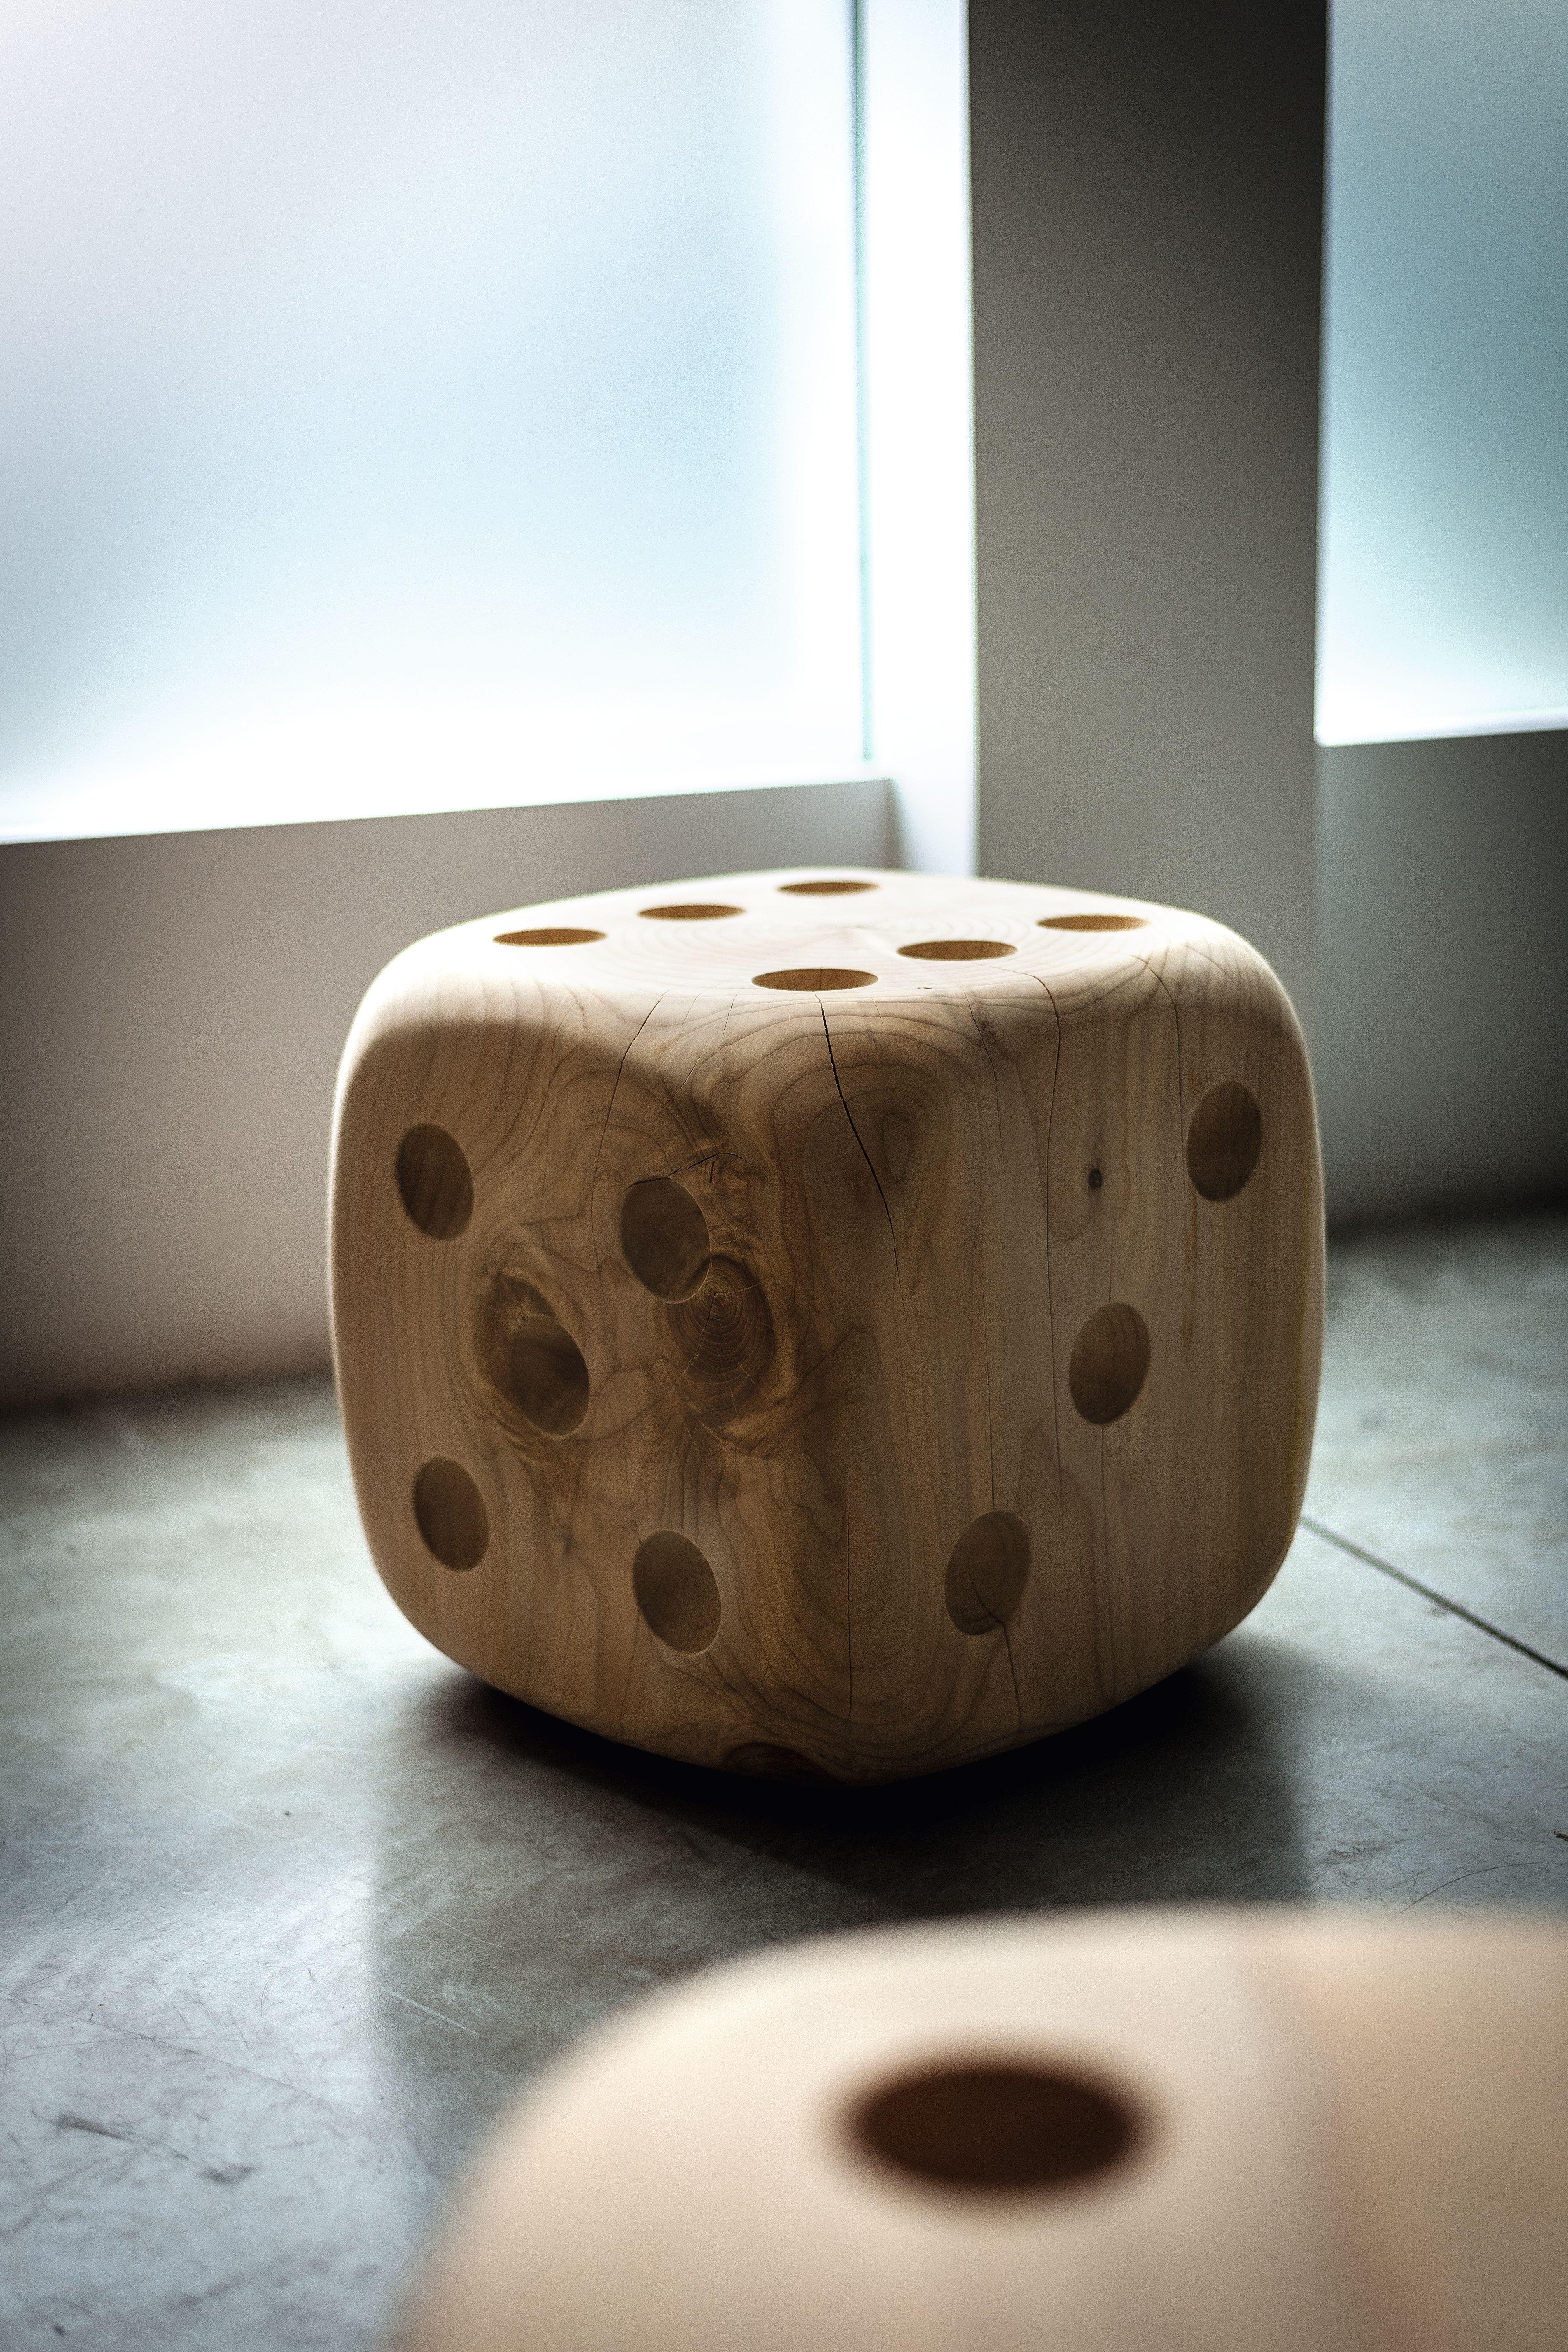 Tabouret réalisé à partir d'un seul bloc de bois de cèdre parfumé, avec des références claires au célèbre jeu de dés.